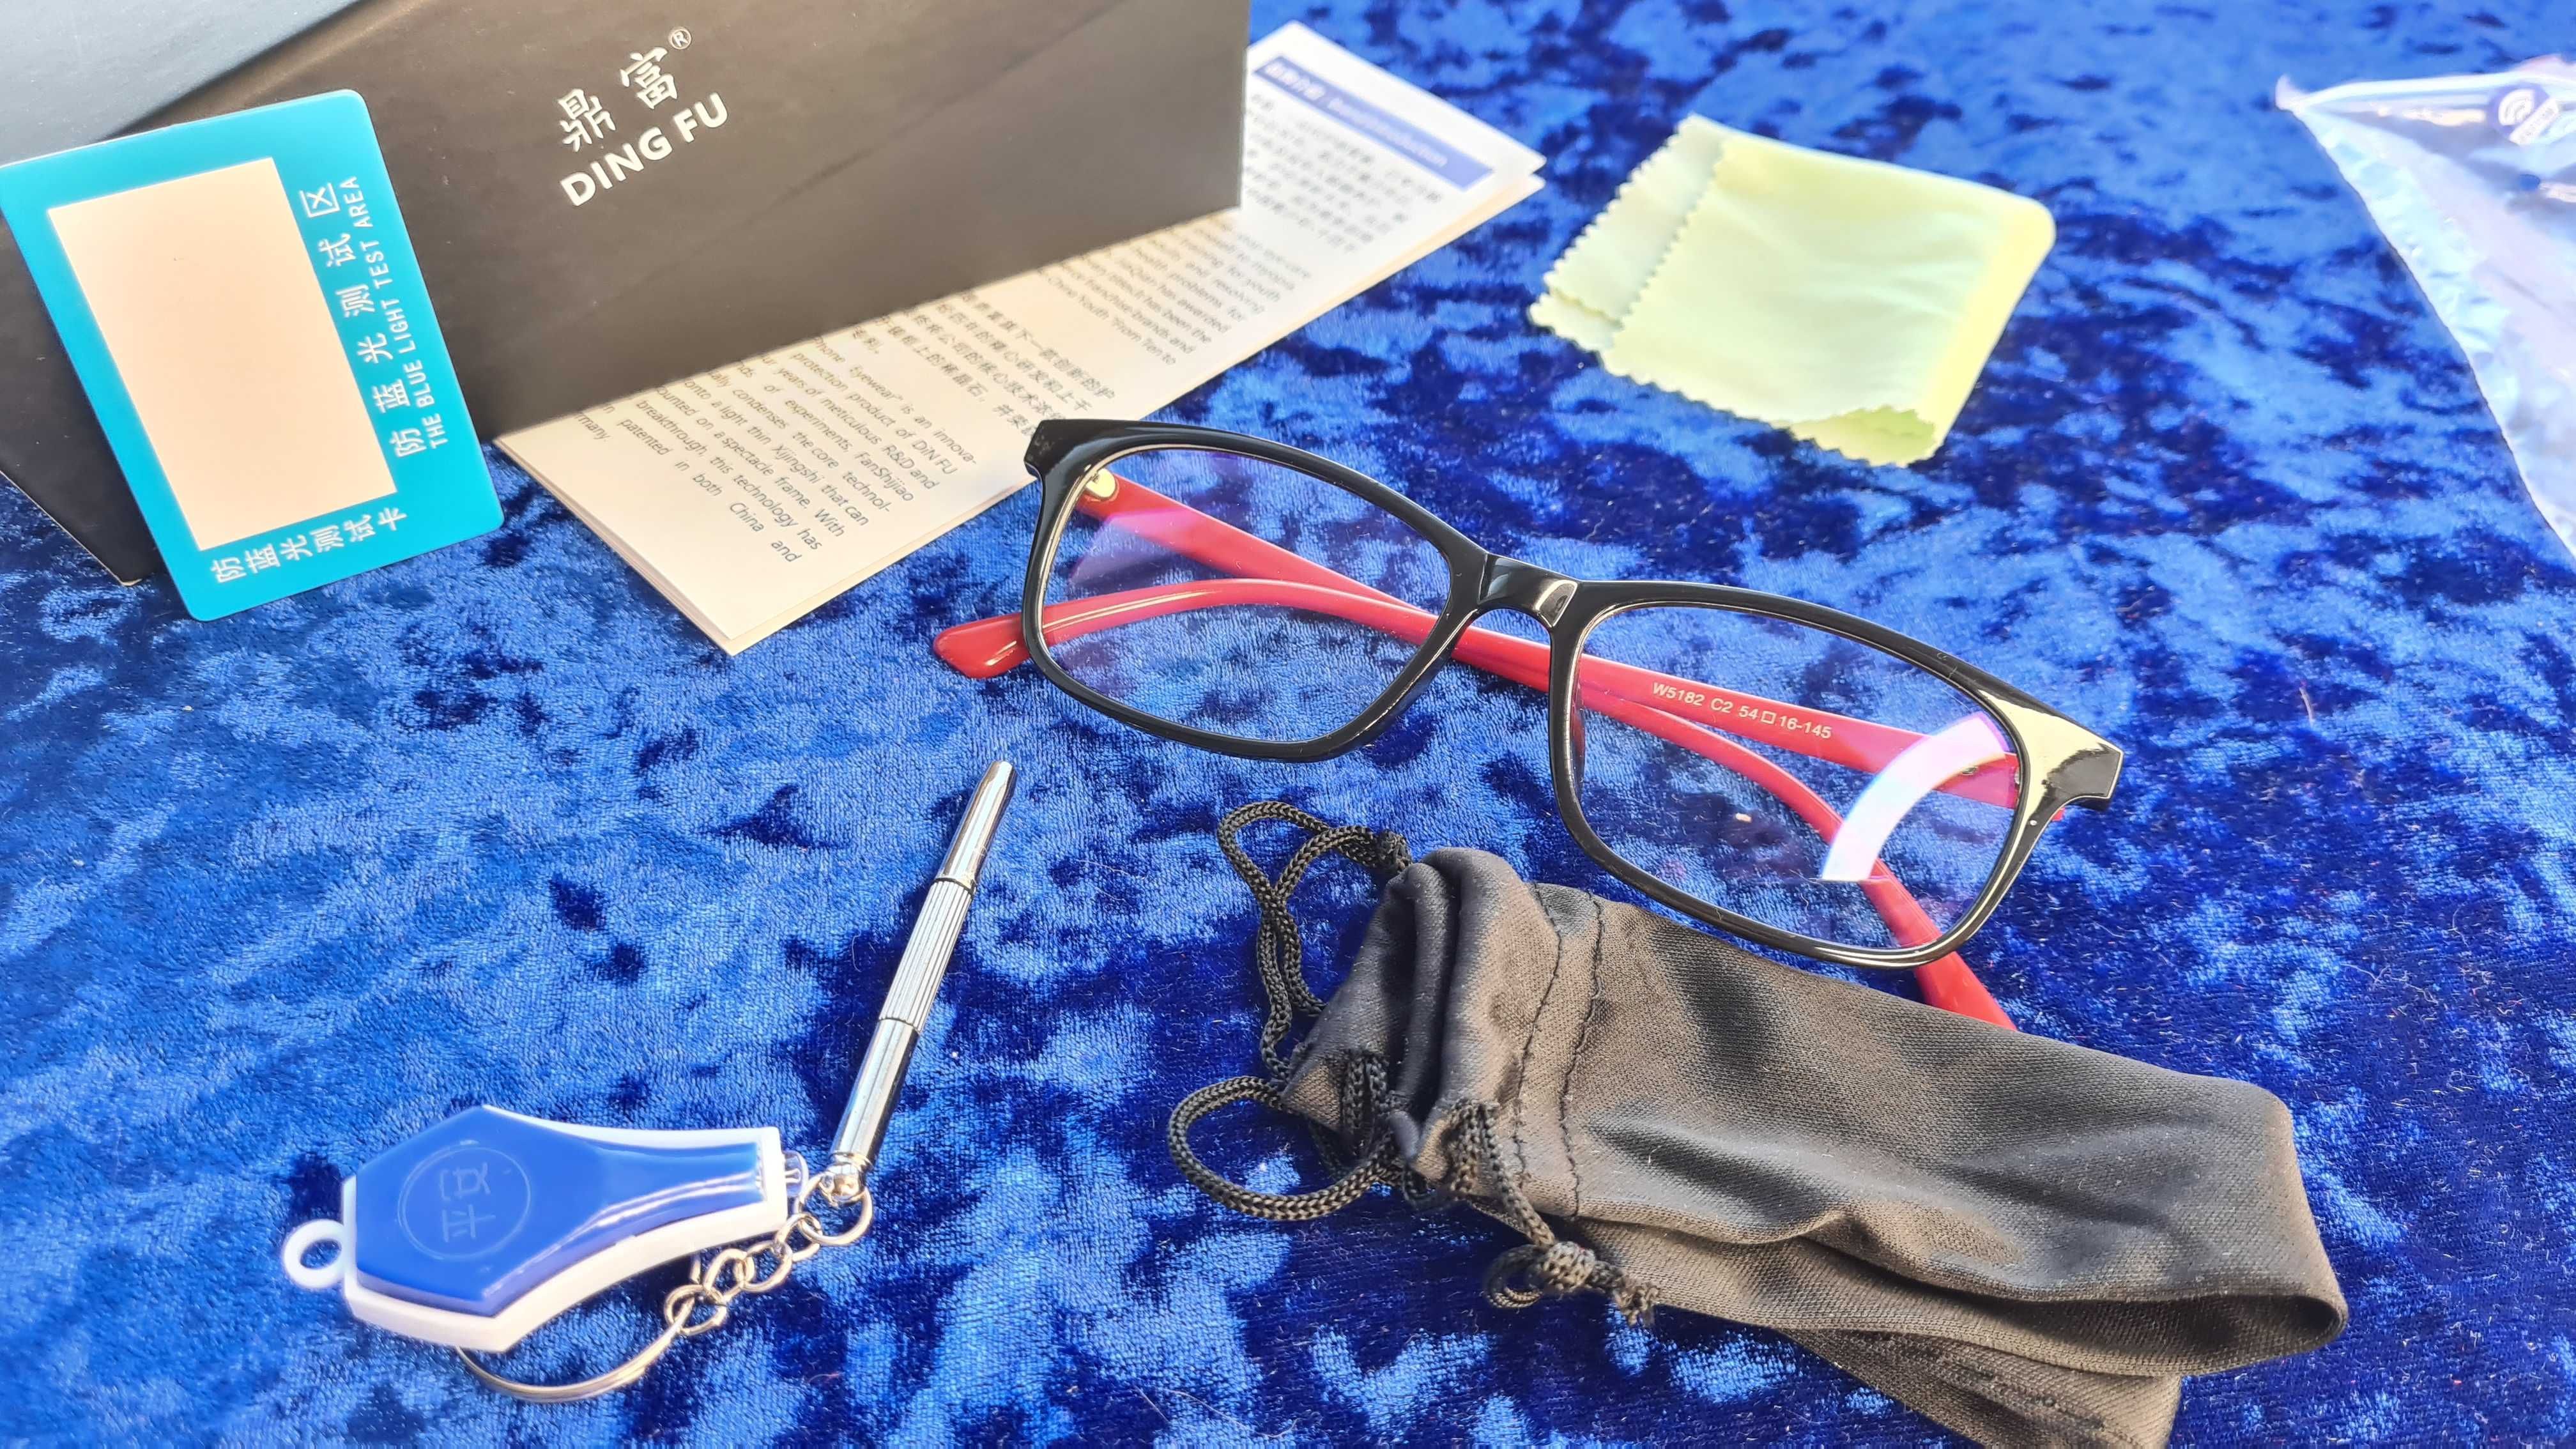 Защитные очки от ультрафиолетового излучения